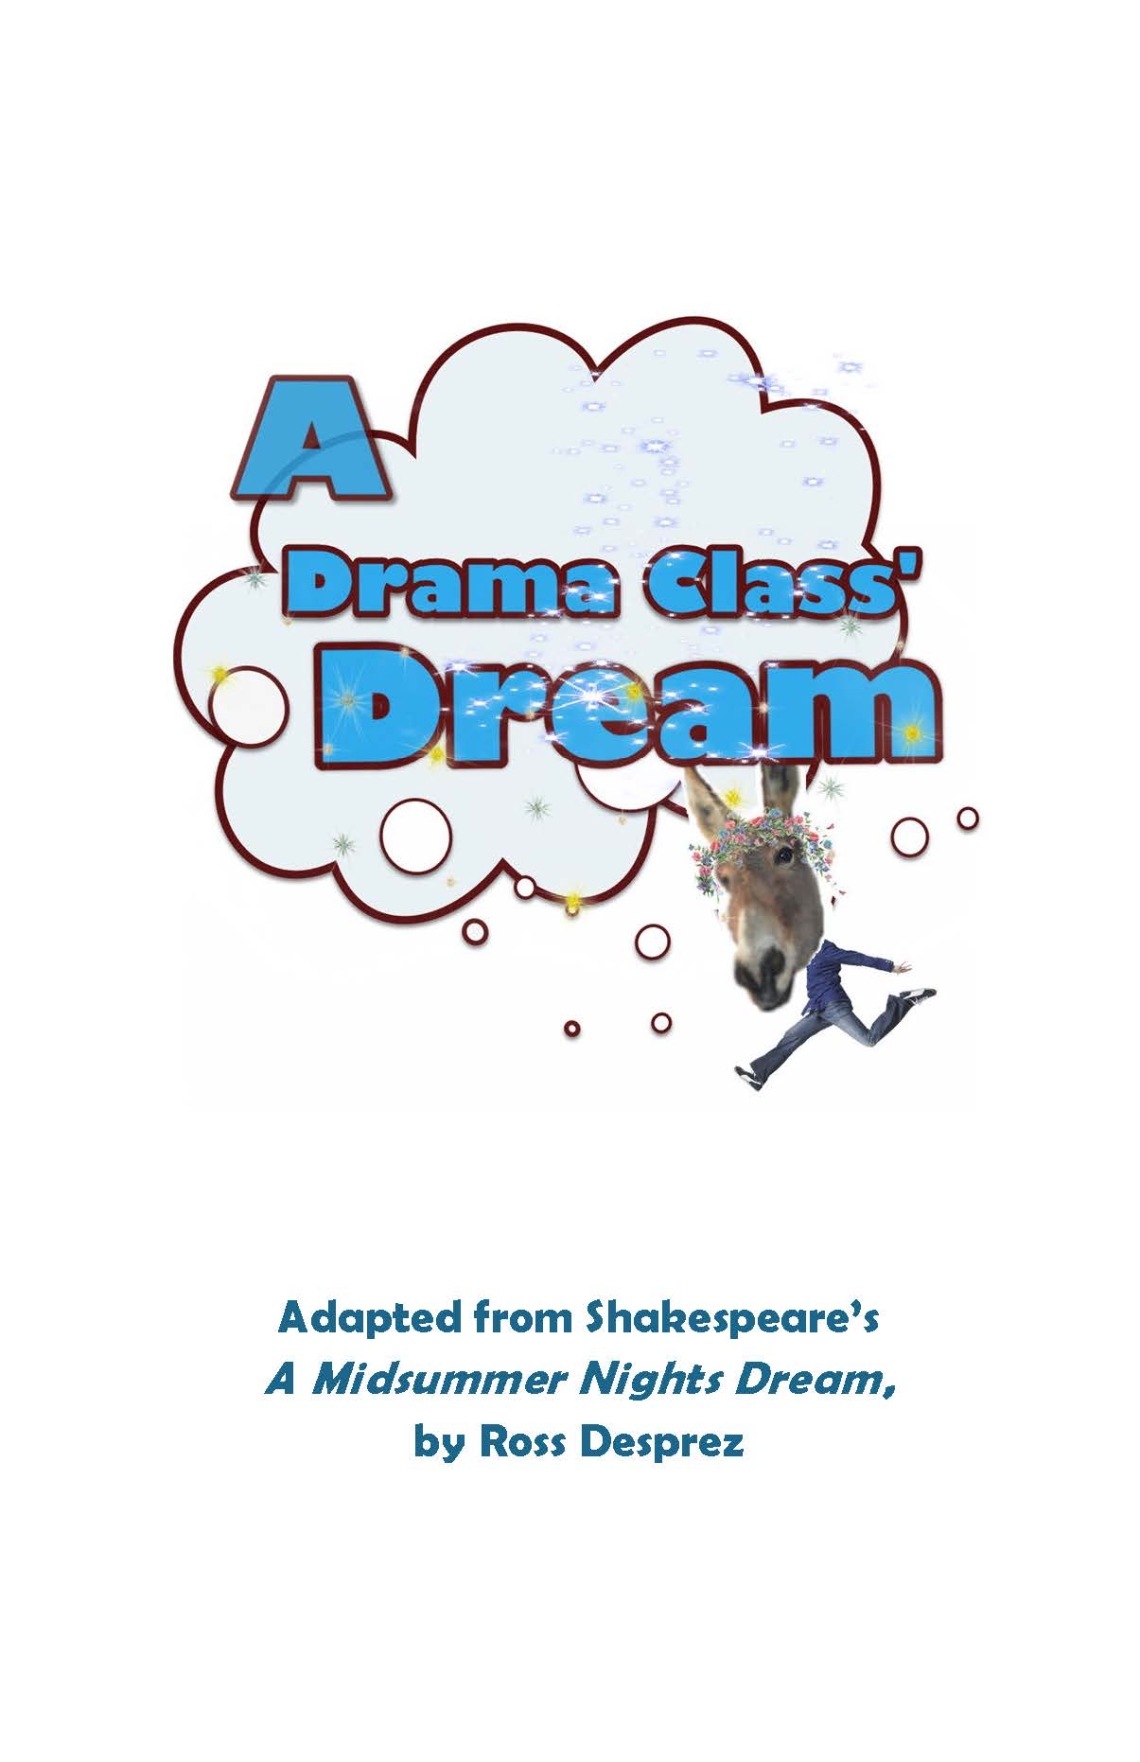 Malaspina Theatre Presents: A drama class dream